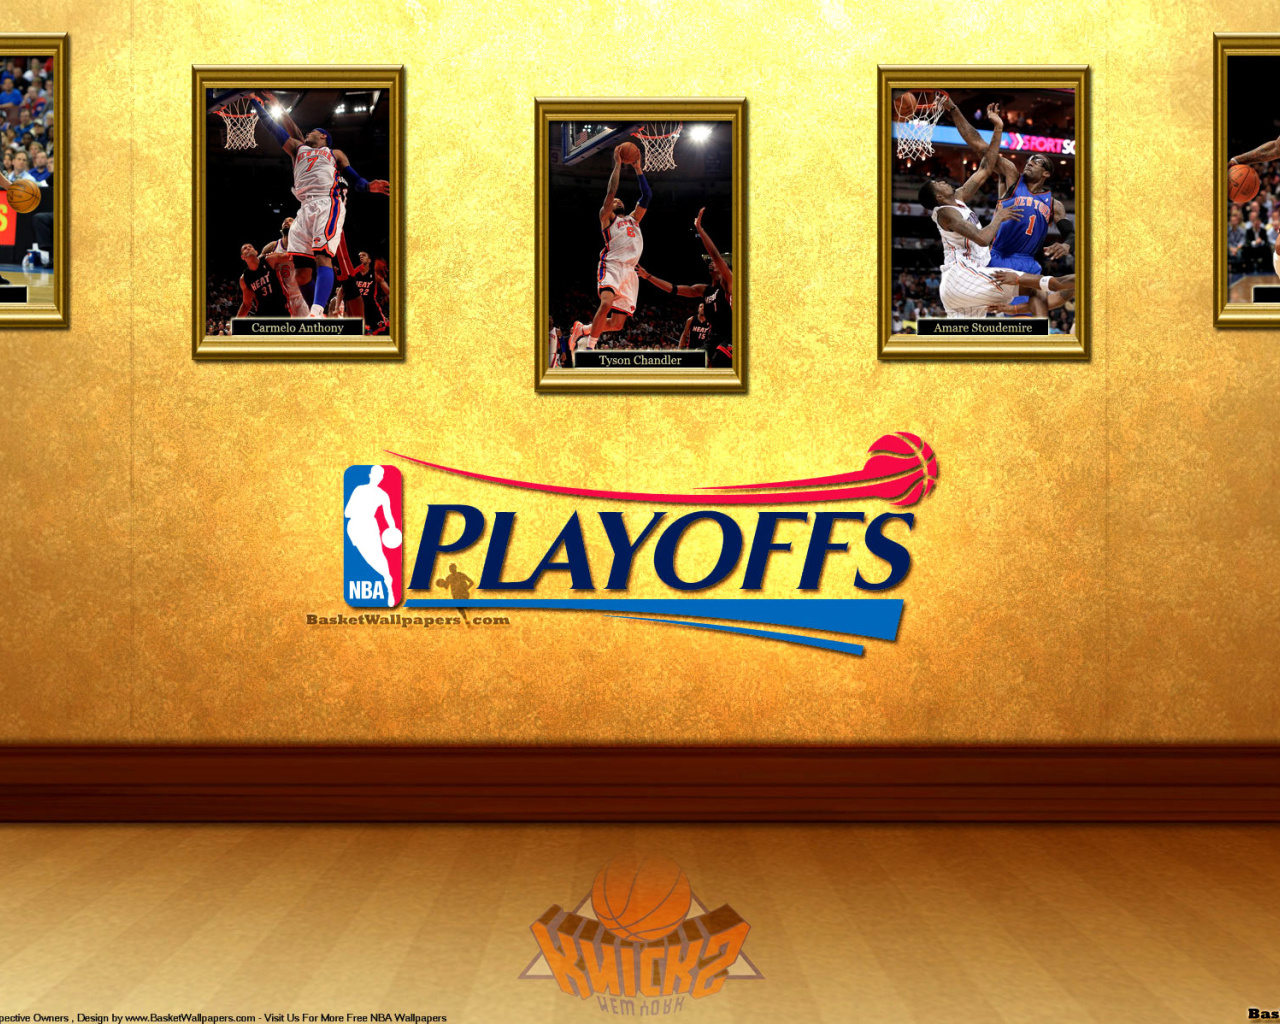 Das New York Knicks NBA Playoffs Wallpaper 1280x1024